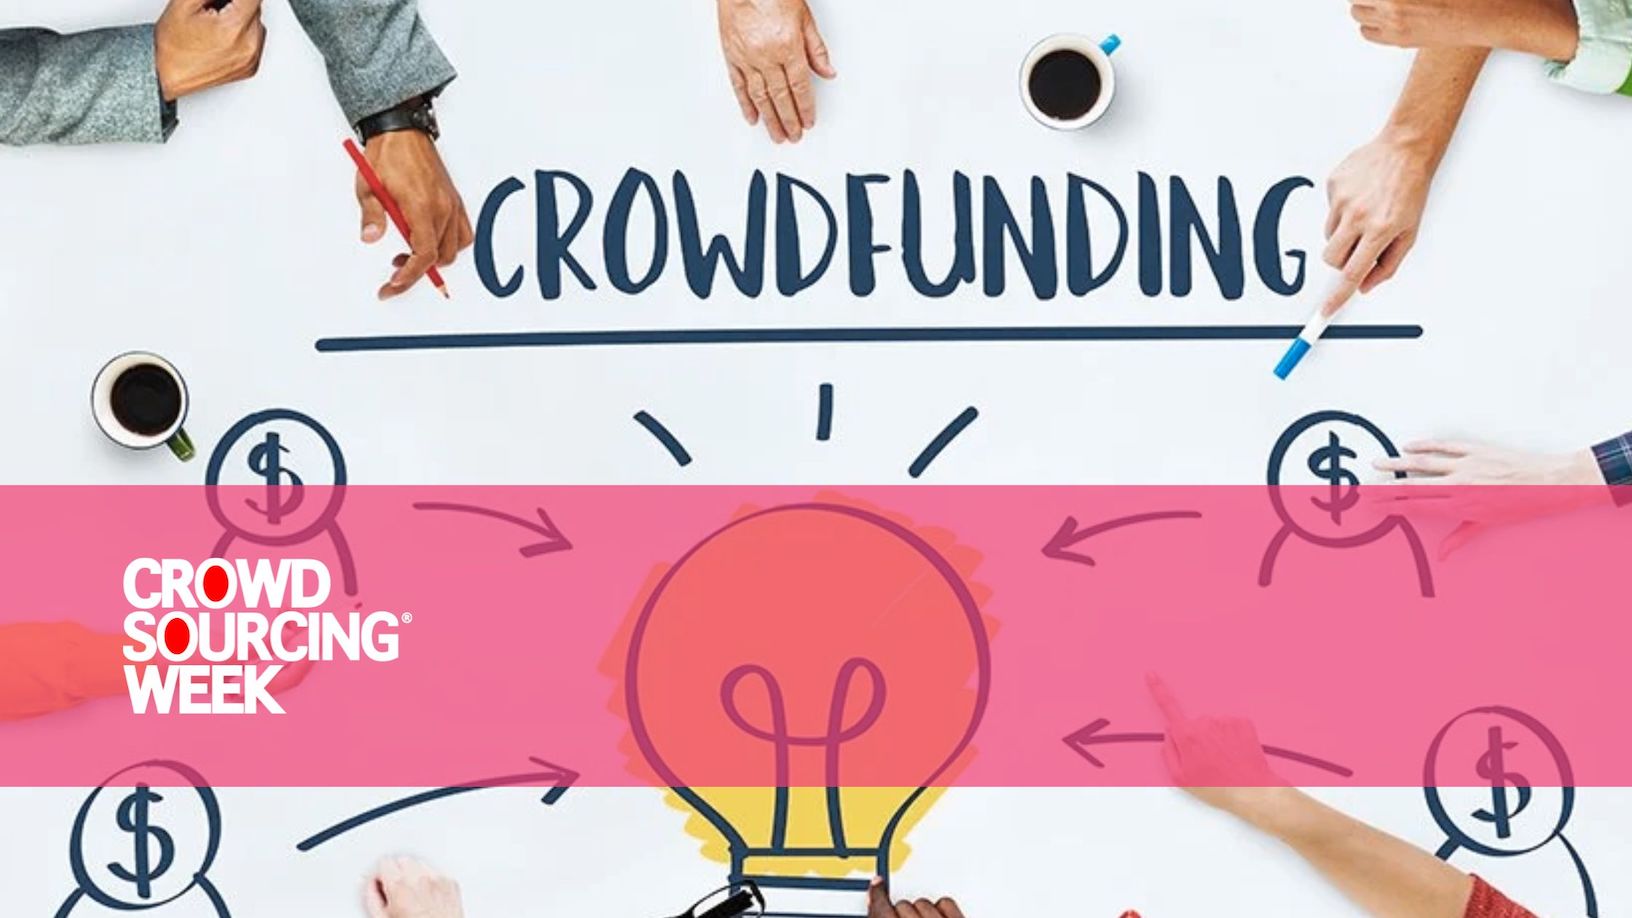 Les 10 meilleurs projets de financement participatif sur Kickstarter et Indiegogo